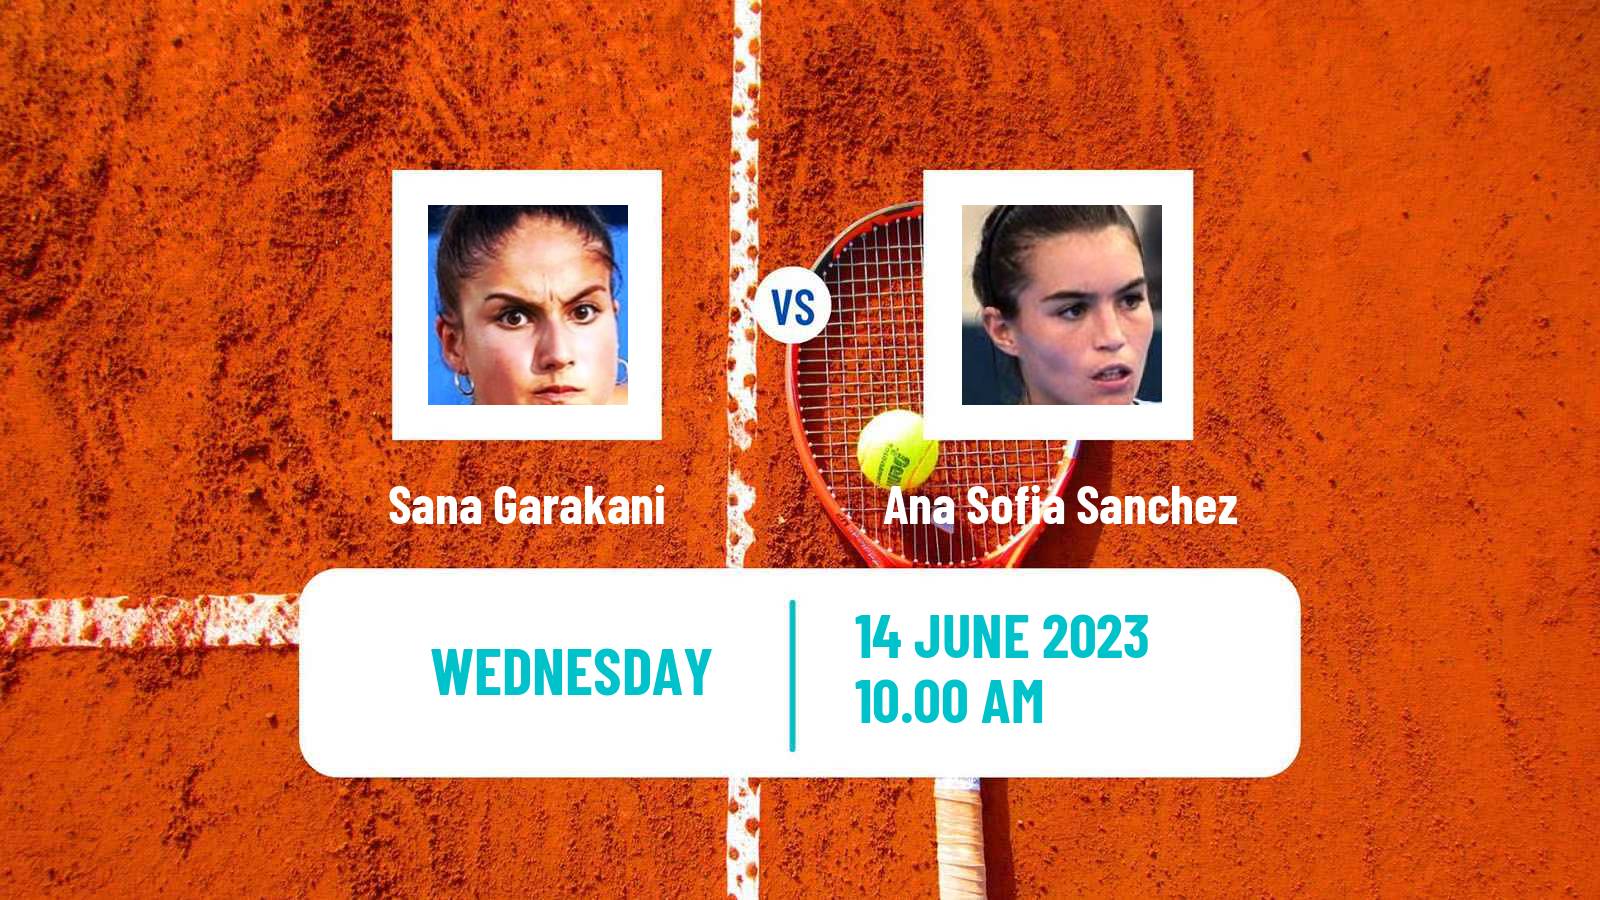 Tennis ITF W25 Guimaraes Women Sana Garakani - Ana Sofia Sanchez